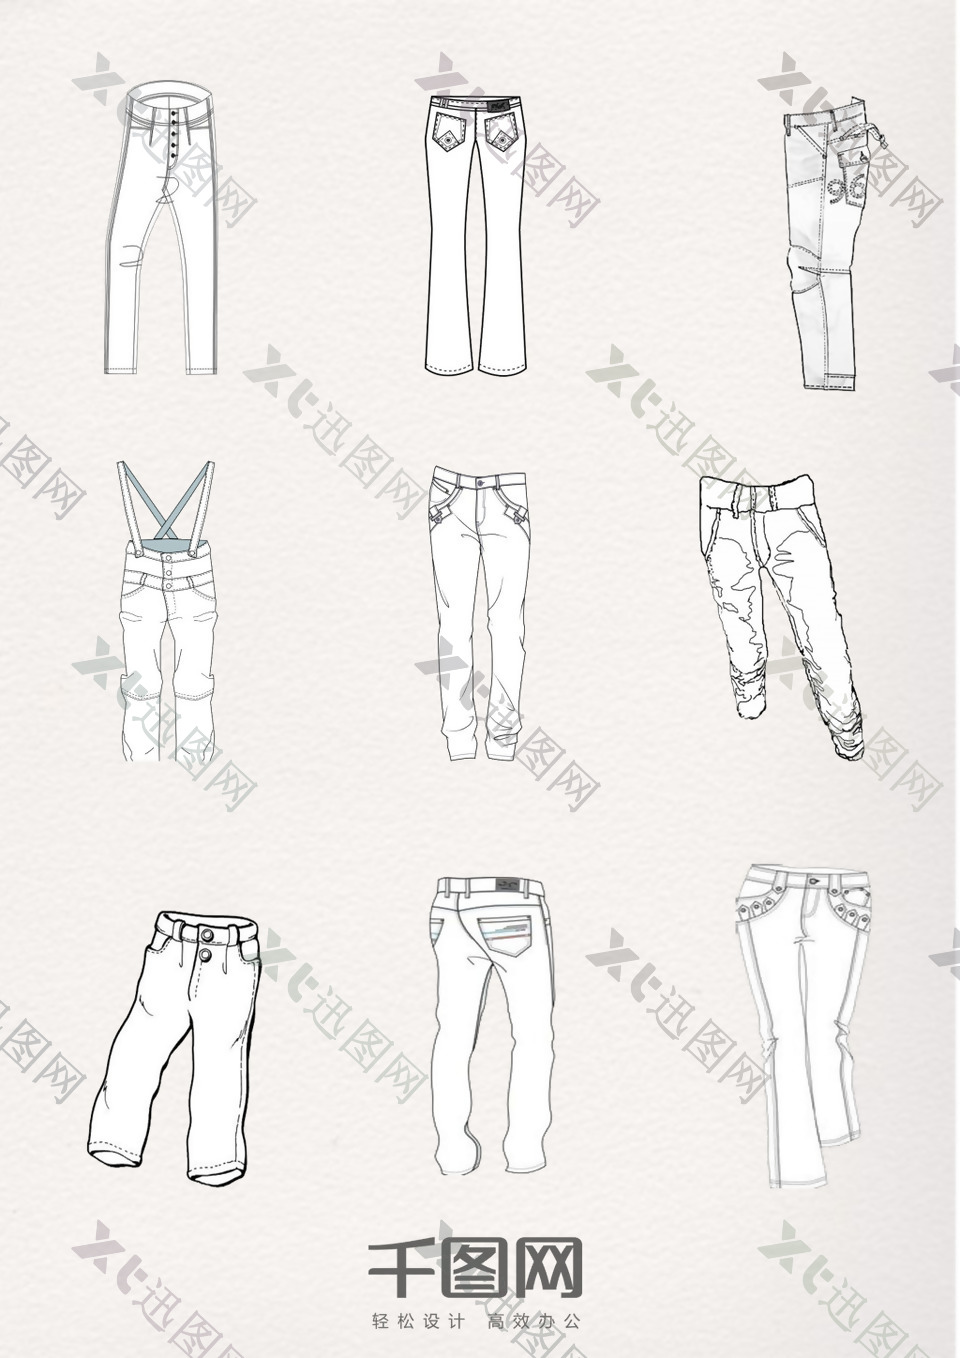 设计简笔牛仔裤图案元素集合